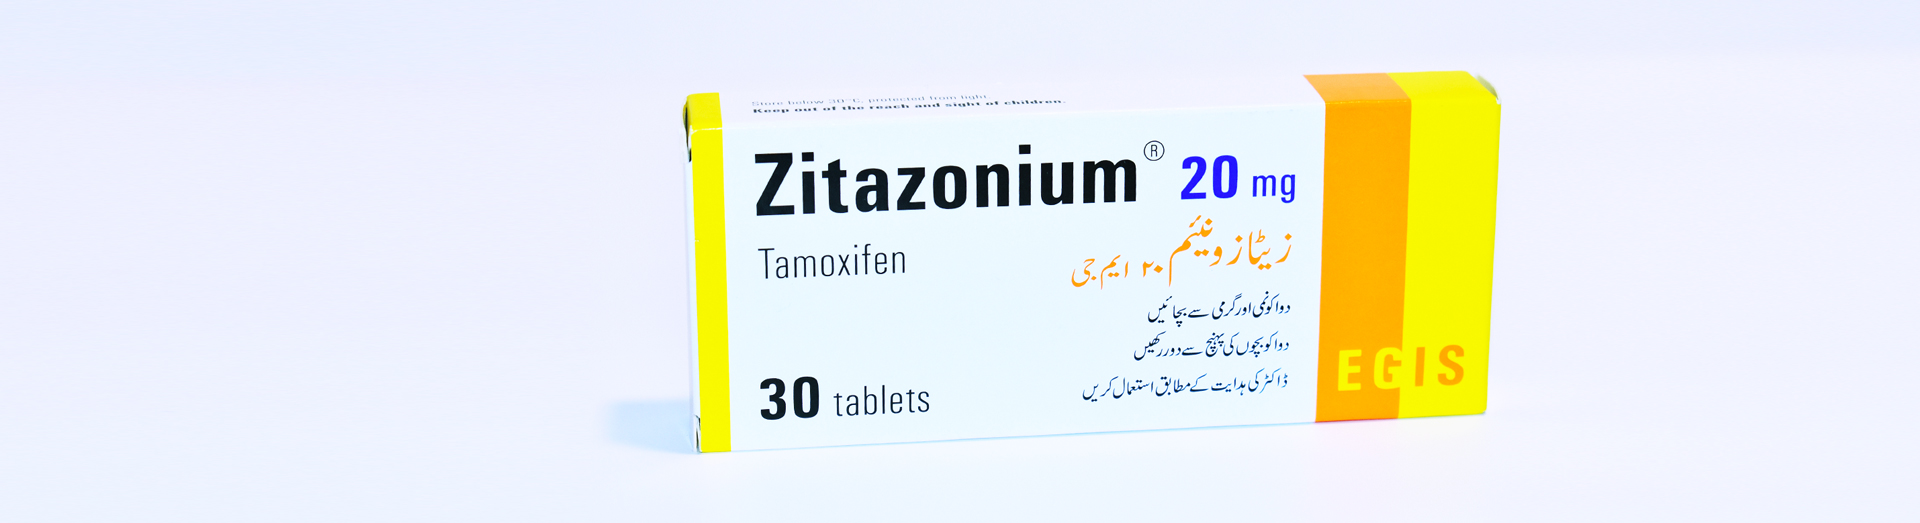 Zitazonium-20mg